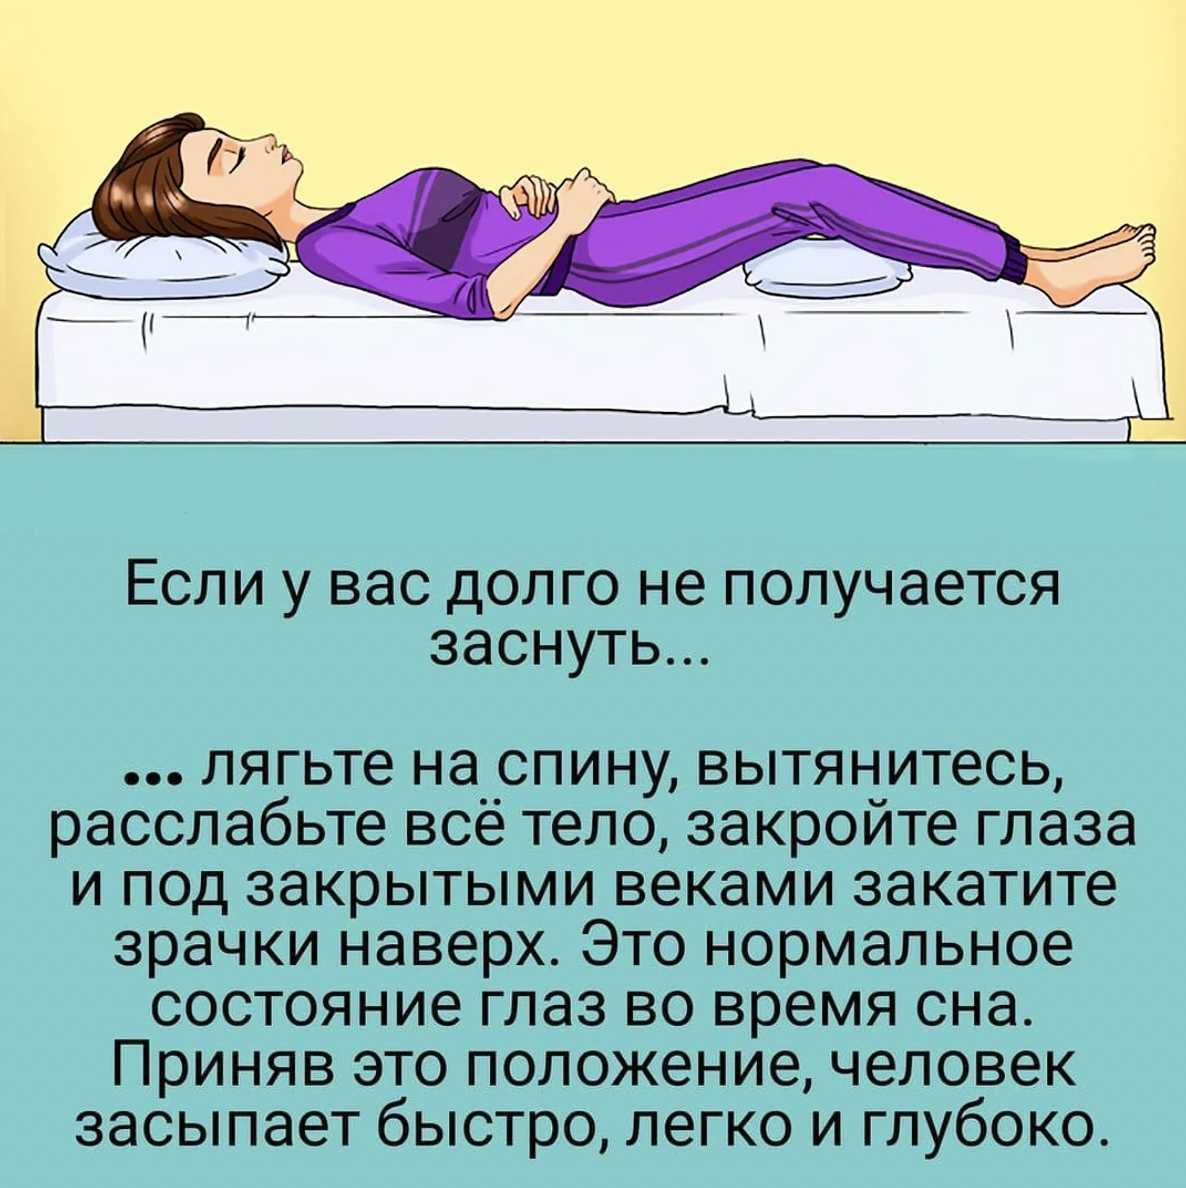 Как не спать всю ночь: практическая инструкция из 13 лайфаков, позволяющая не навредить себе и не сбить режим сна после продуктивной ночной работы